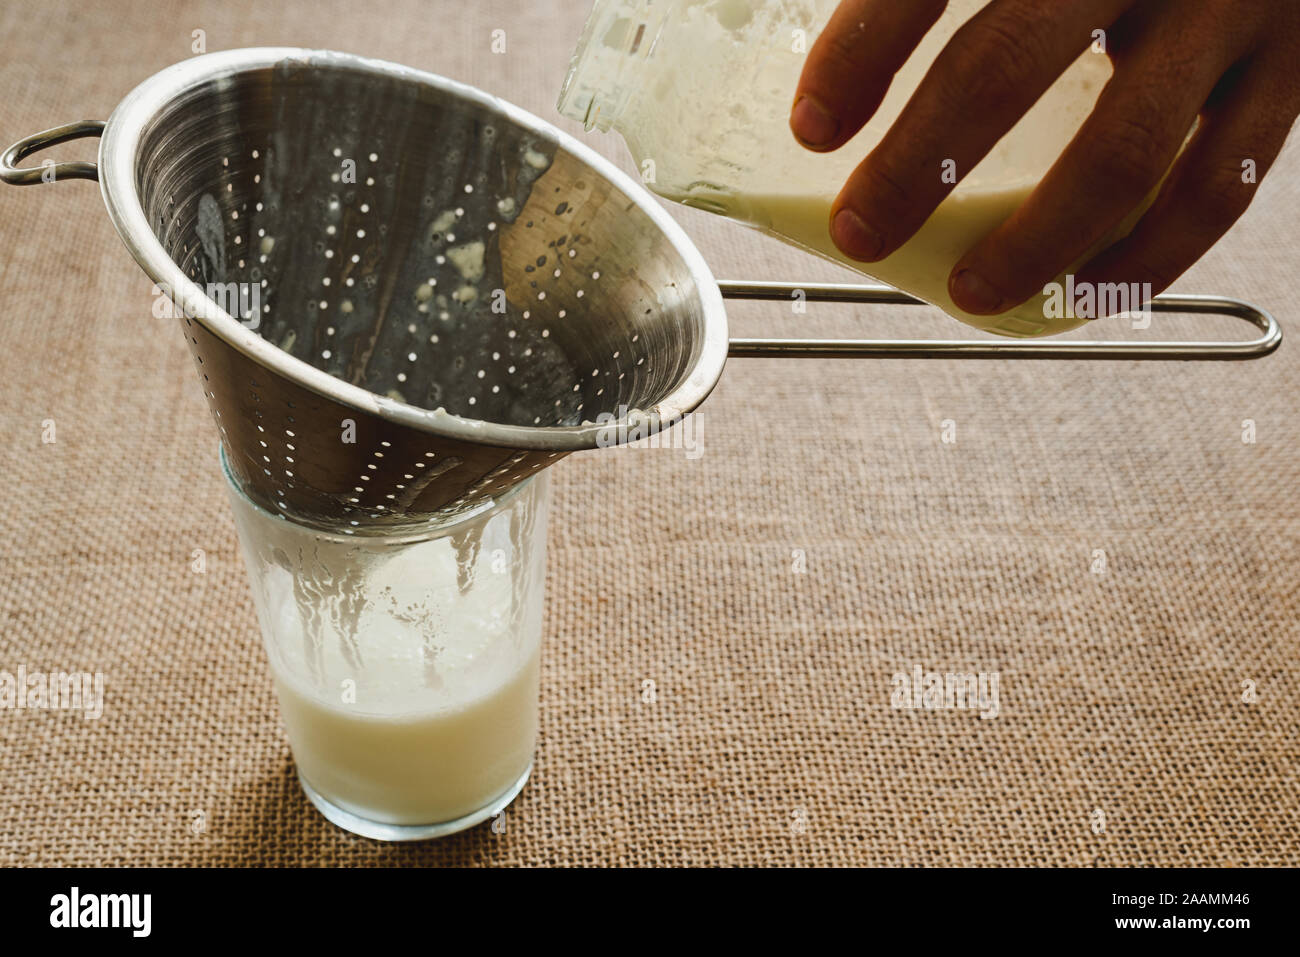 Die Hand des Mannes gießt Milch Kefir in eine Kanne ein gesundes Frühstück für die intestinale Mikrobiota vorzubereiten. Stockfoto